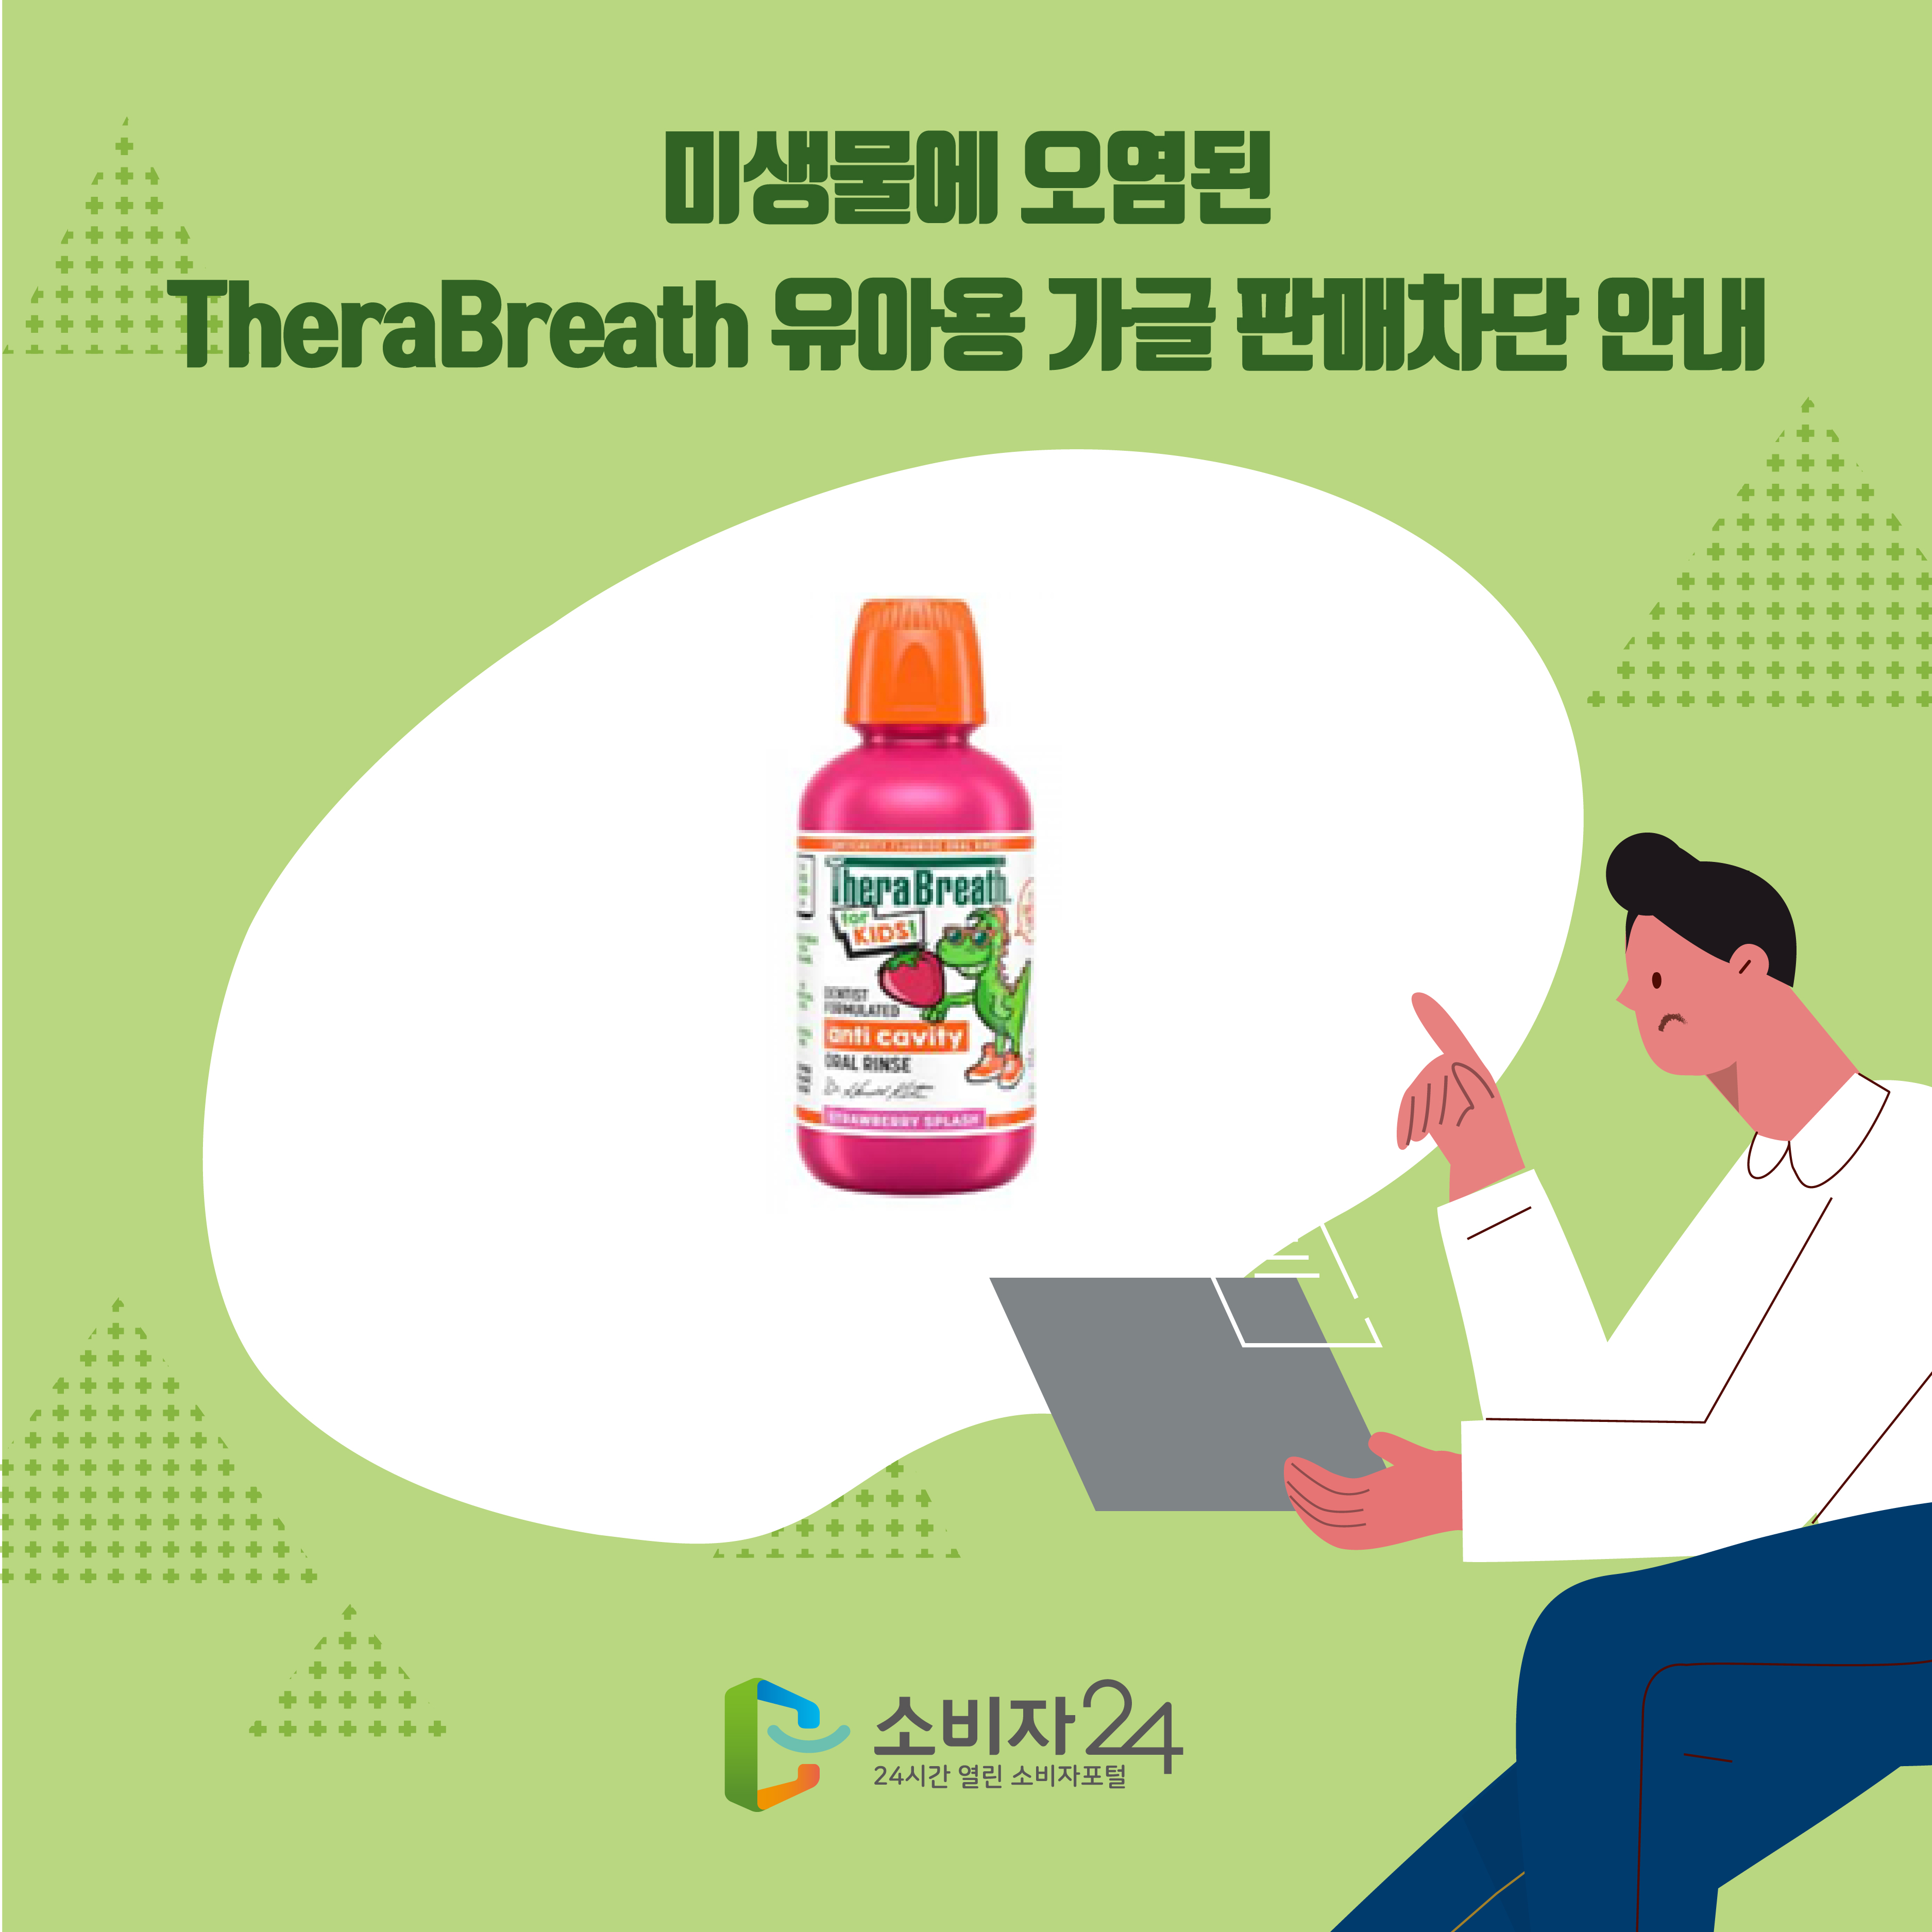 미생물에 오염된 TheraBreath 유아용 가글 판매차단 안내 1번째 이미지